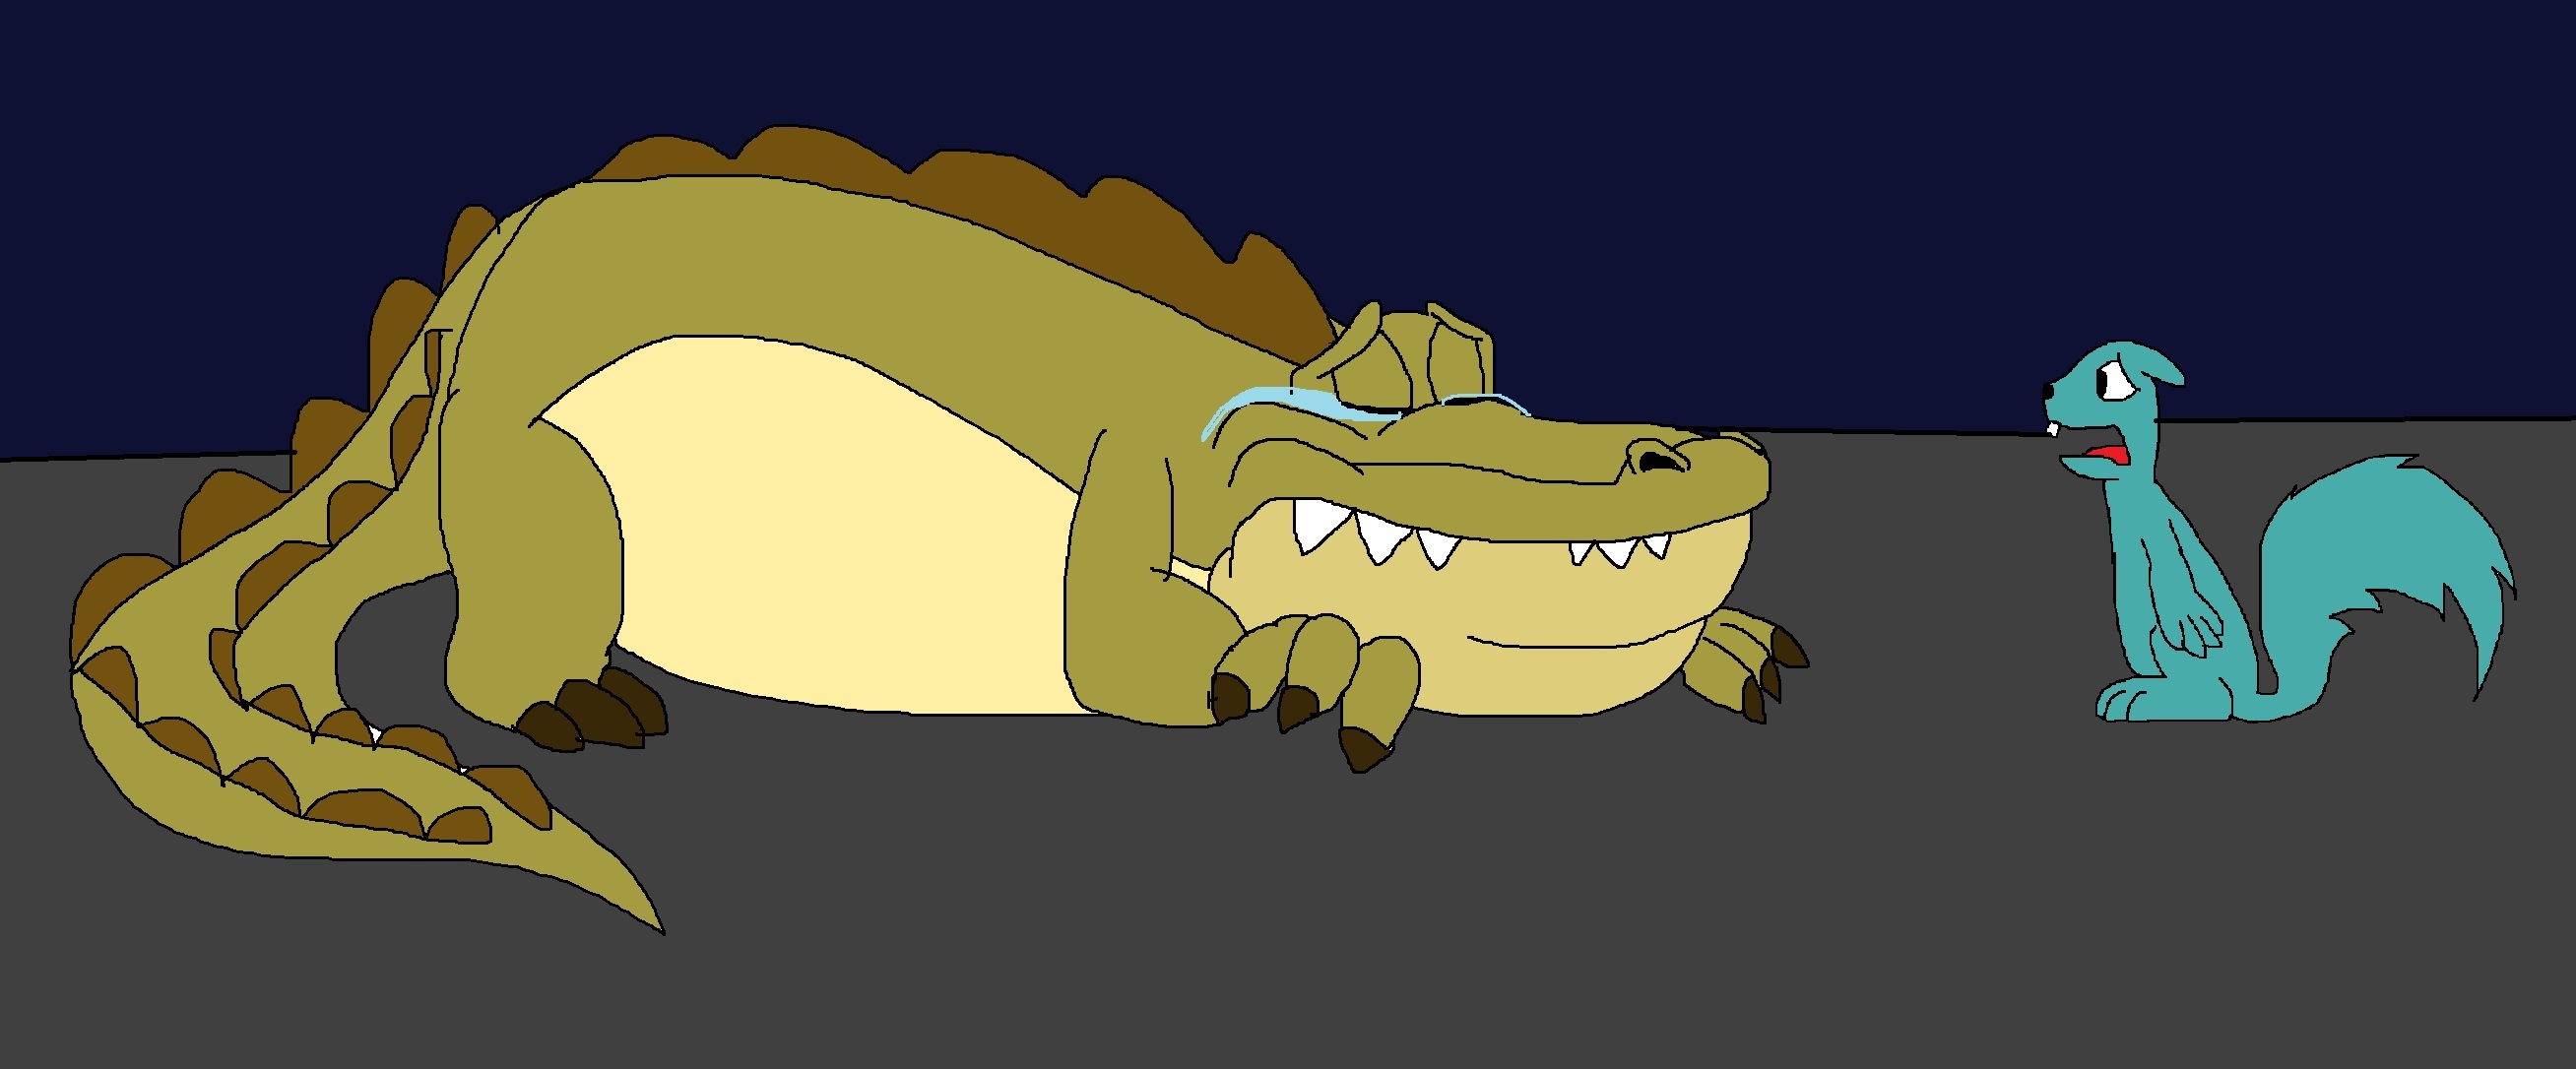 Poor Louis the Alligator by Rainbow-Dash-Rockz